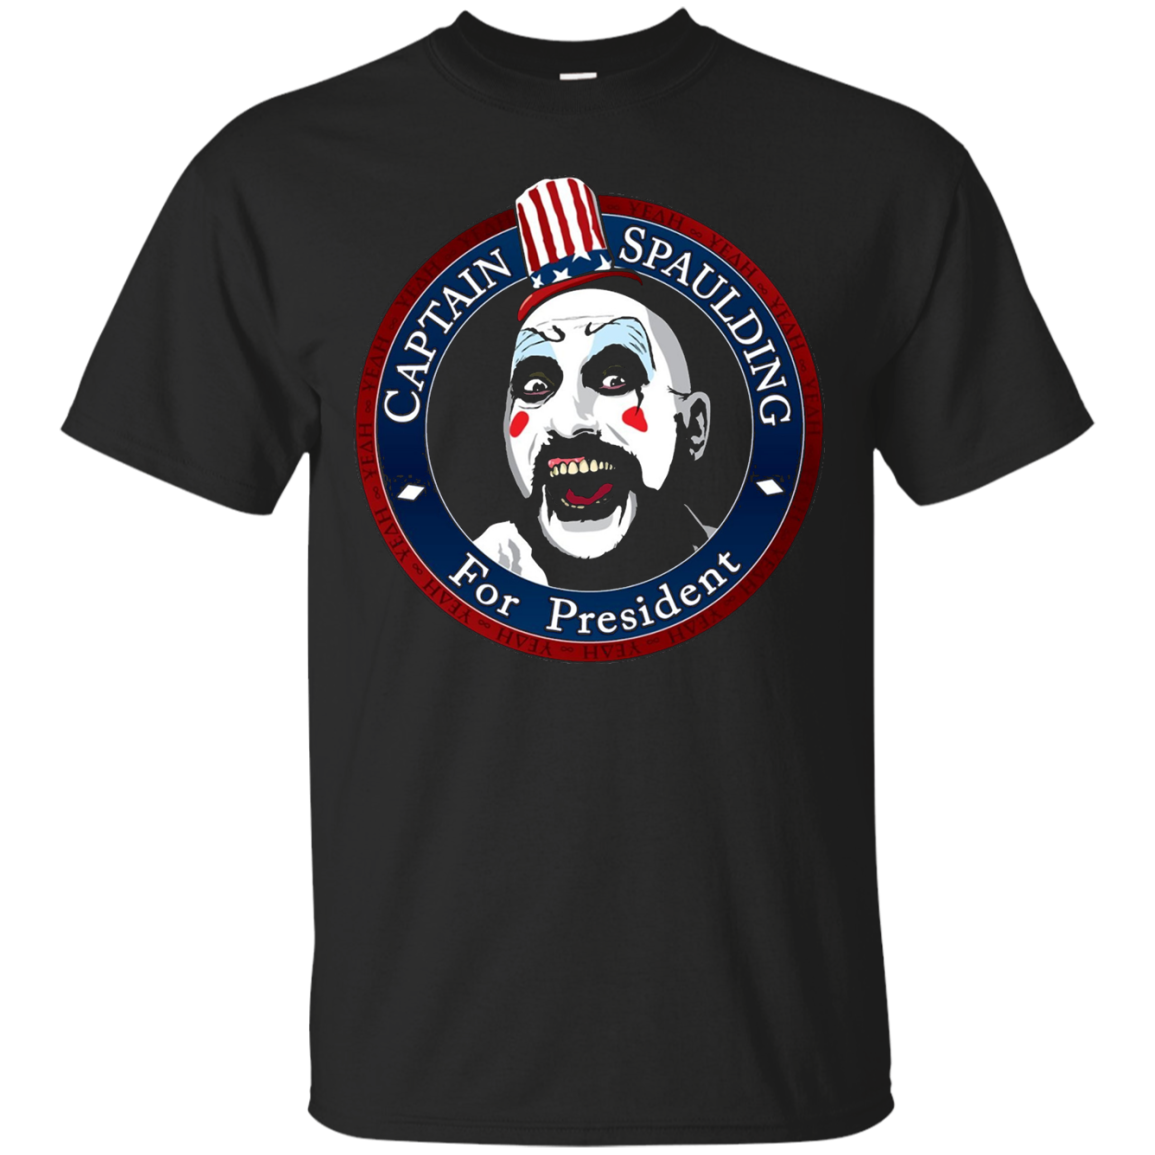 Captain Spaulding For President T shirt